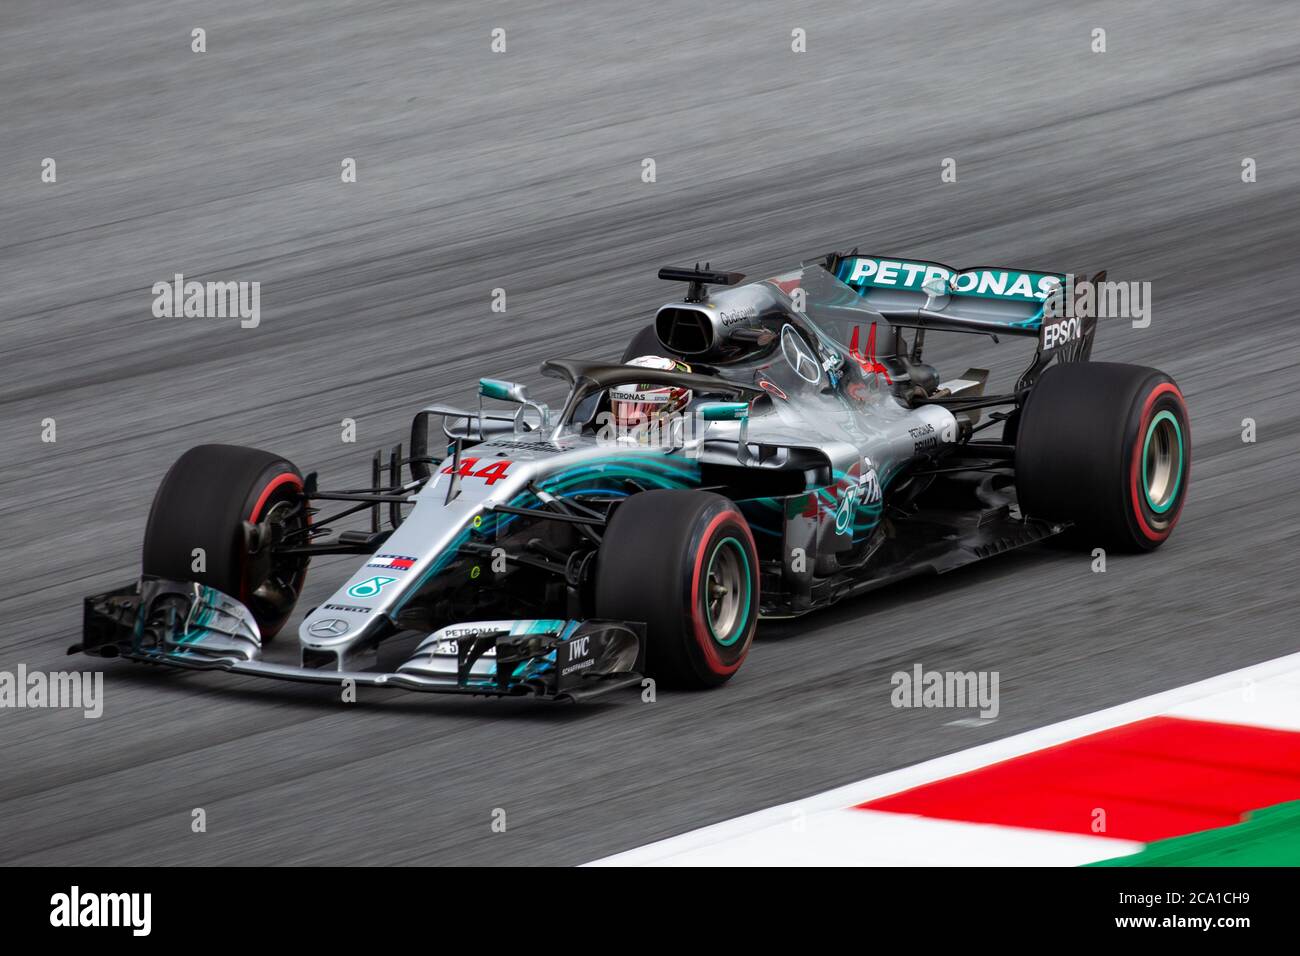 Lewis Hamilton dans sa Mercedes AMG F1 W08 EQ Power+ lors de la qualification du Grand Prix autrichien 2018 au Red Bull Ring. Banque D'Images